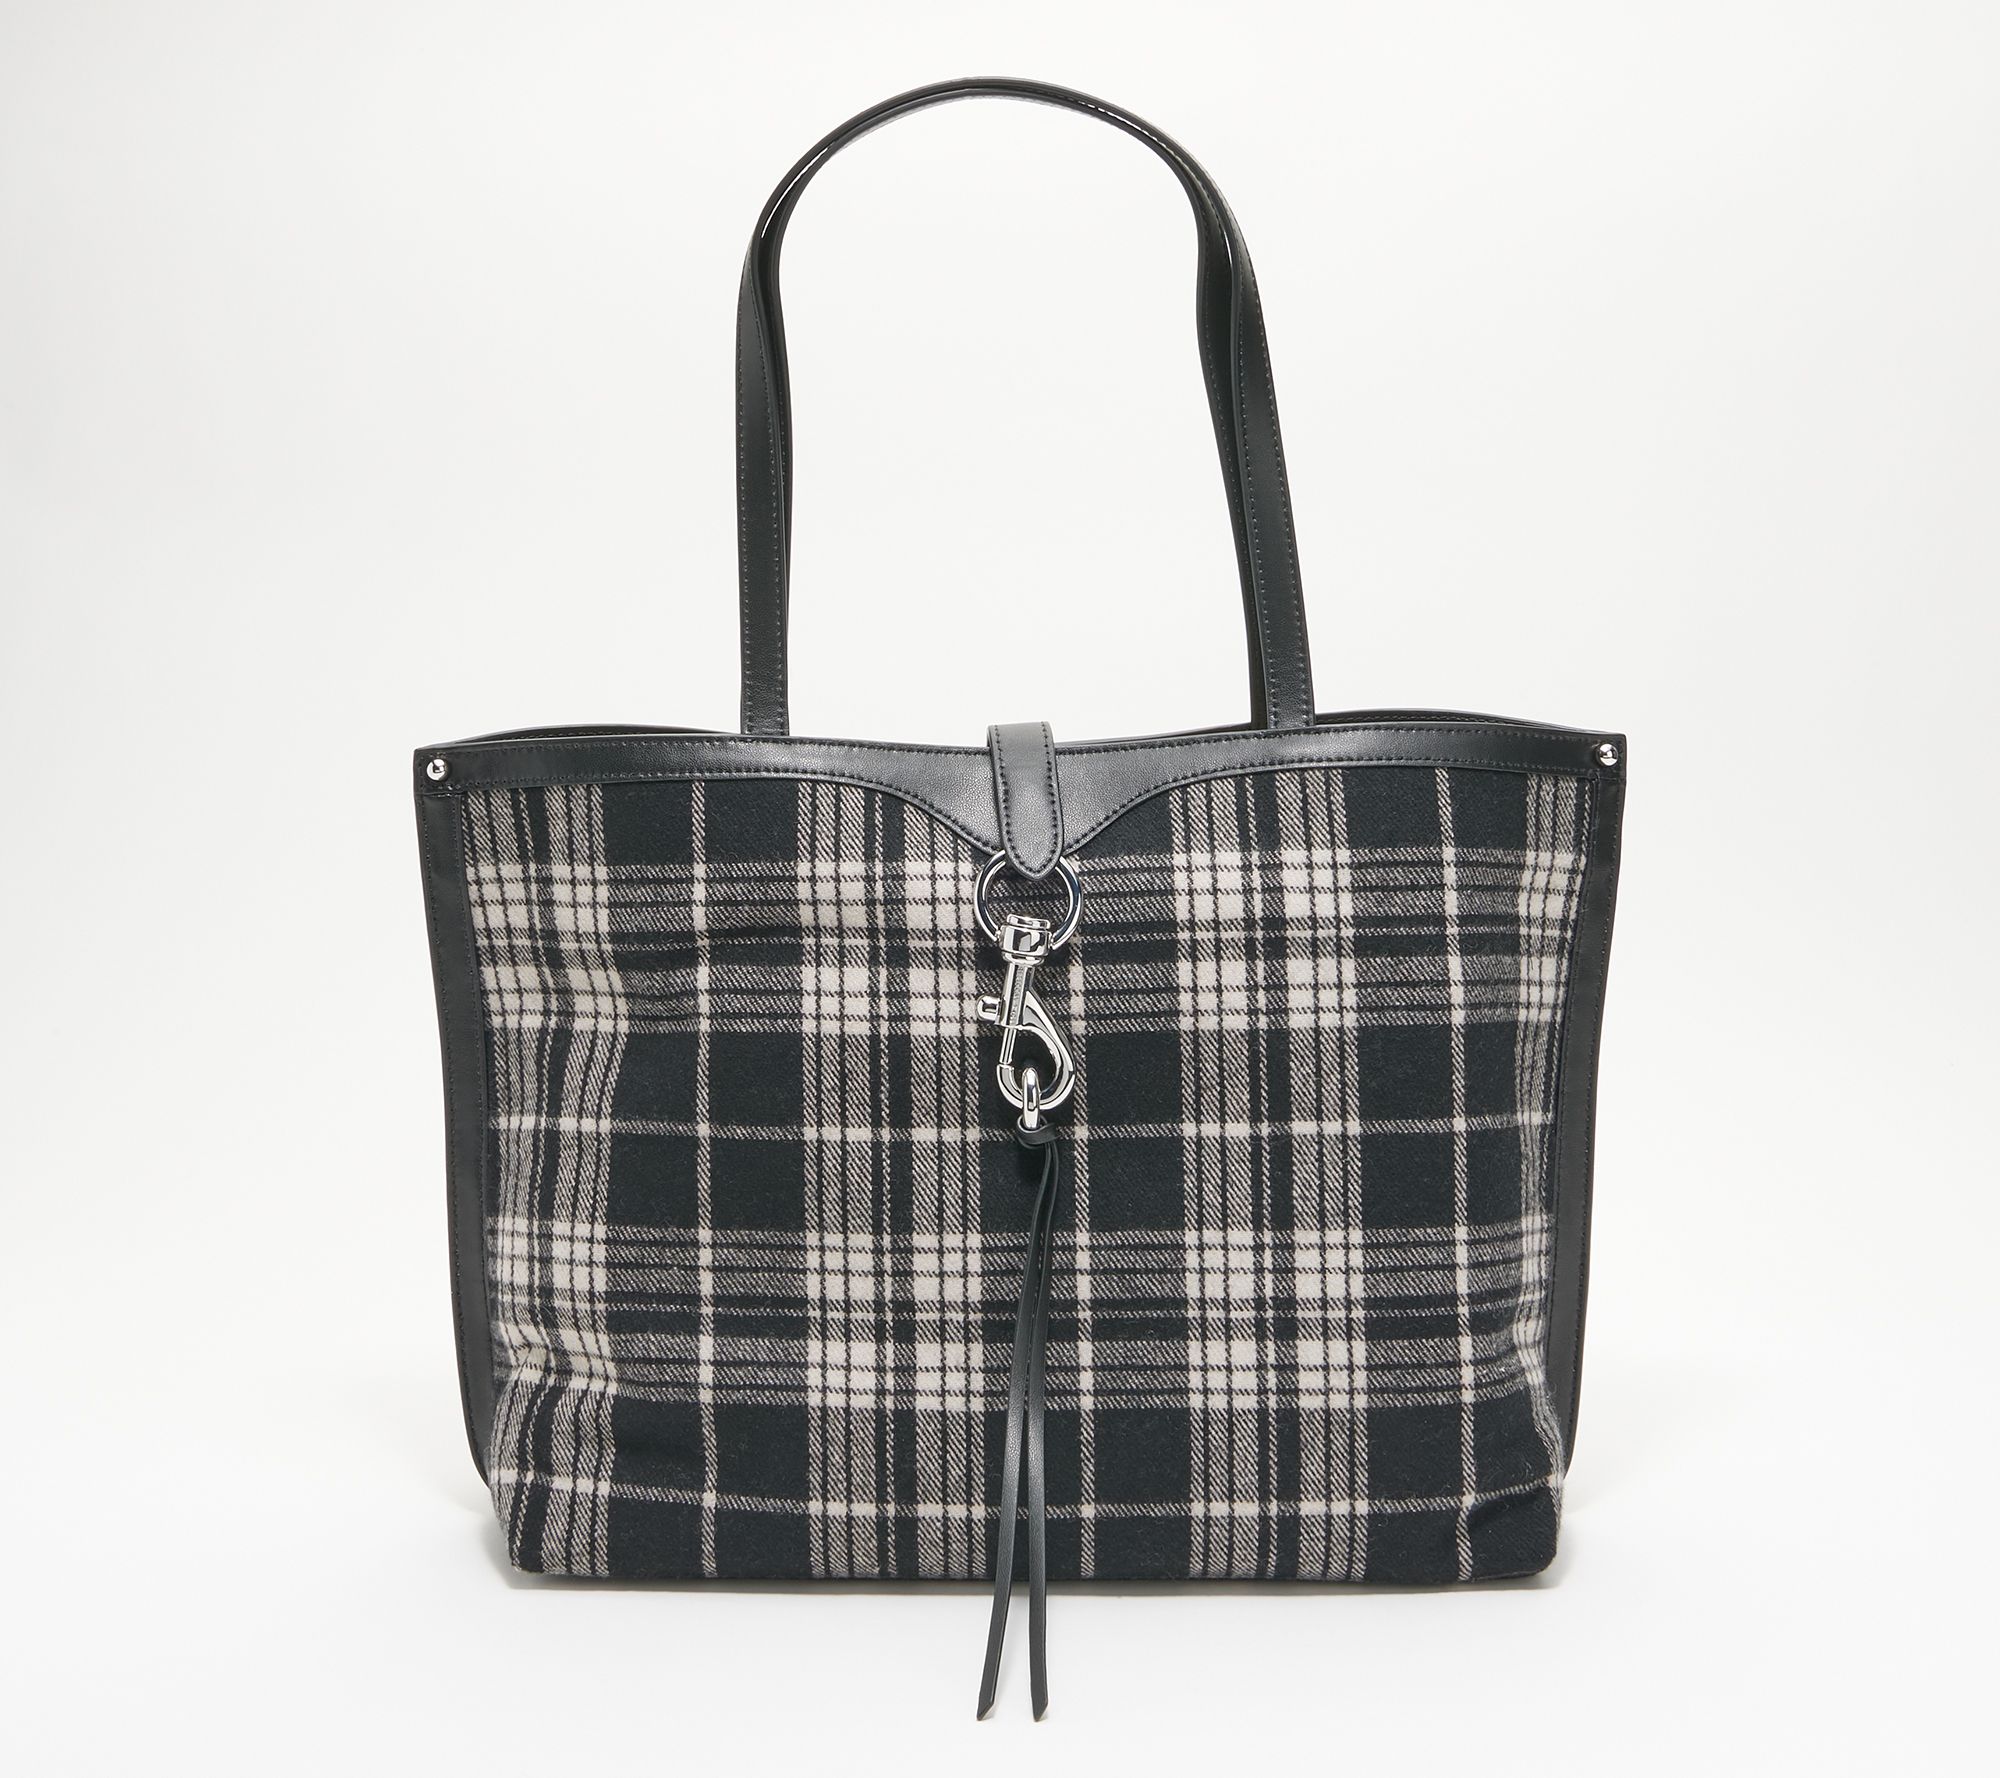 Black and White Purse Handbag with Shoulder Strap, Cute Checkered Check Plaid High Grade PU Leather Women Designer Handbag